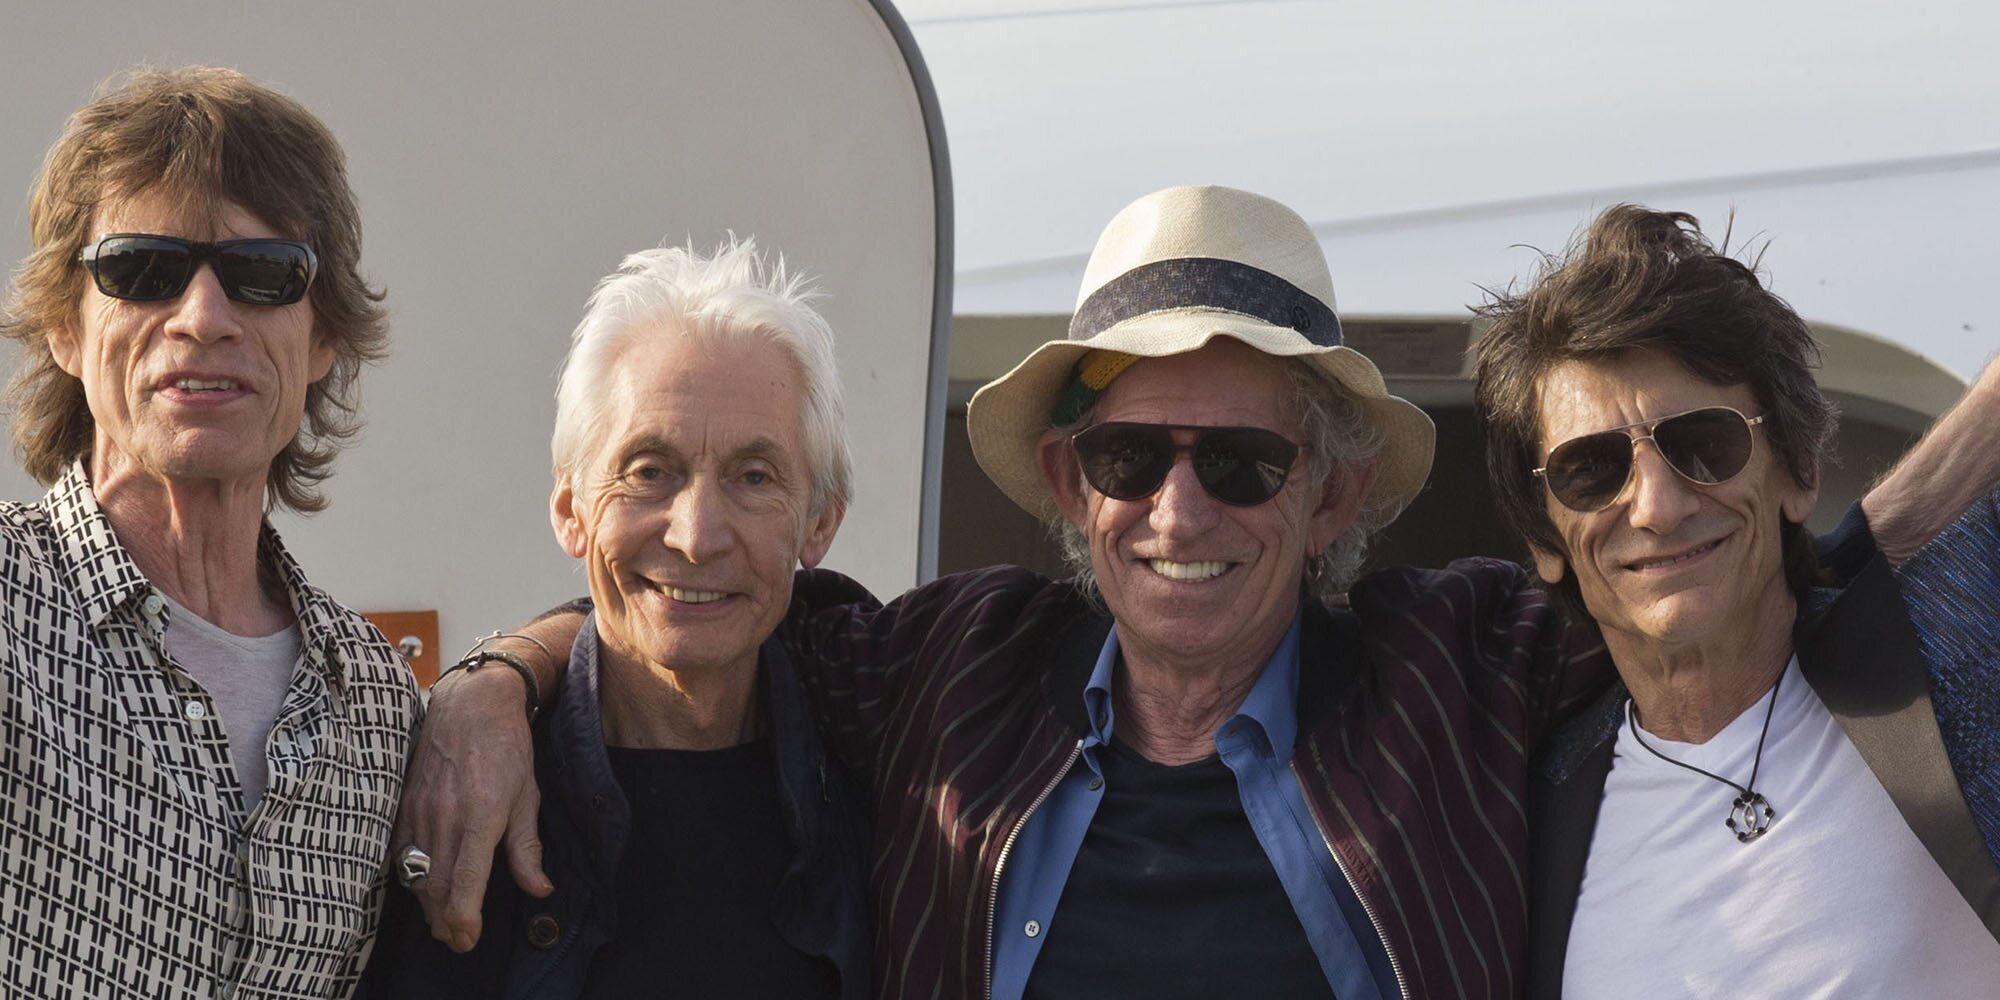 Los Rolling Stones harán un homenaje a Charlie Watts, batería del grupo fallecido recientemente